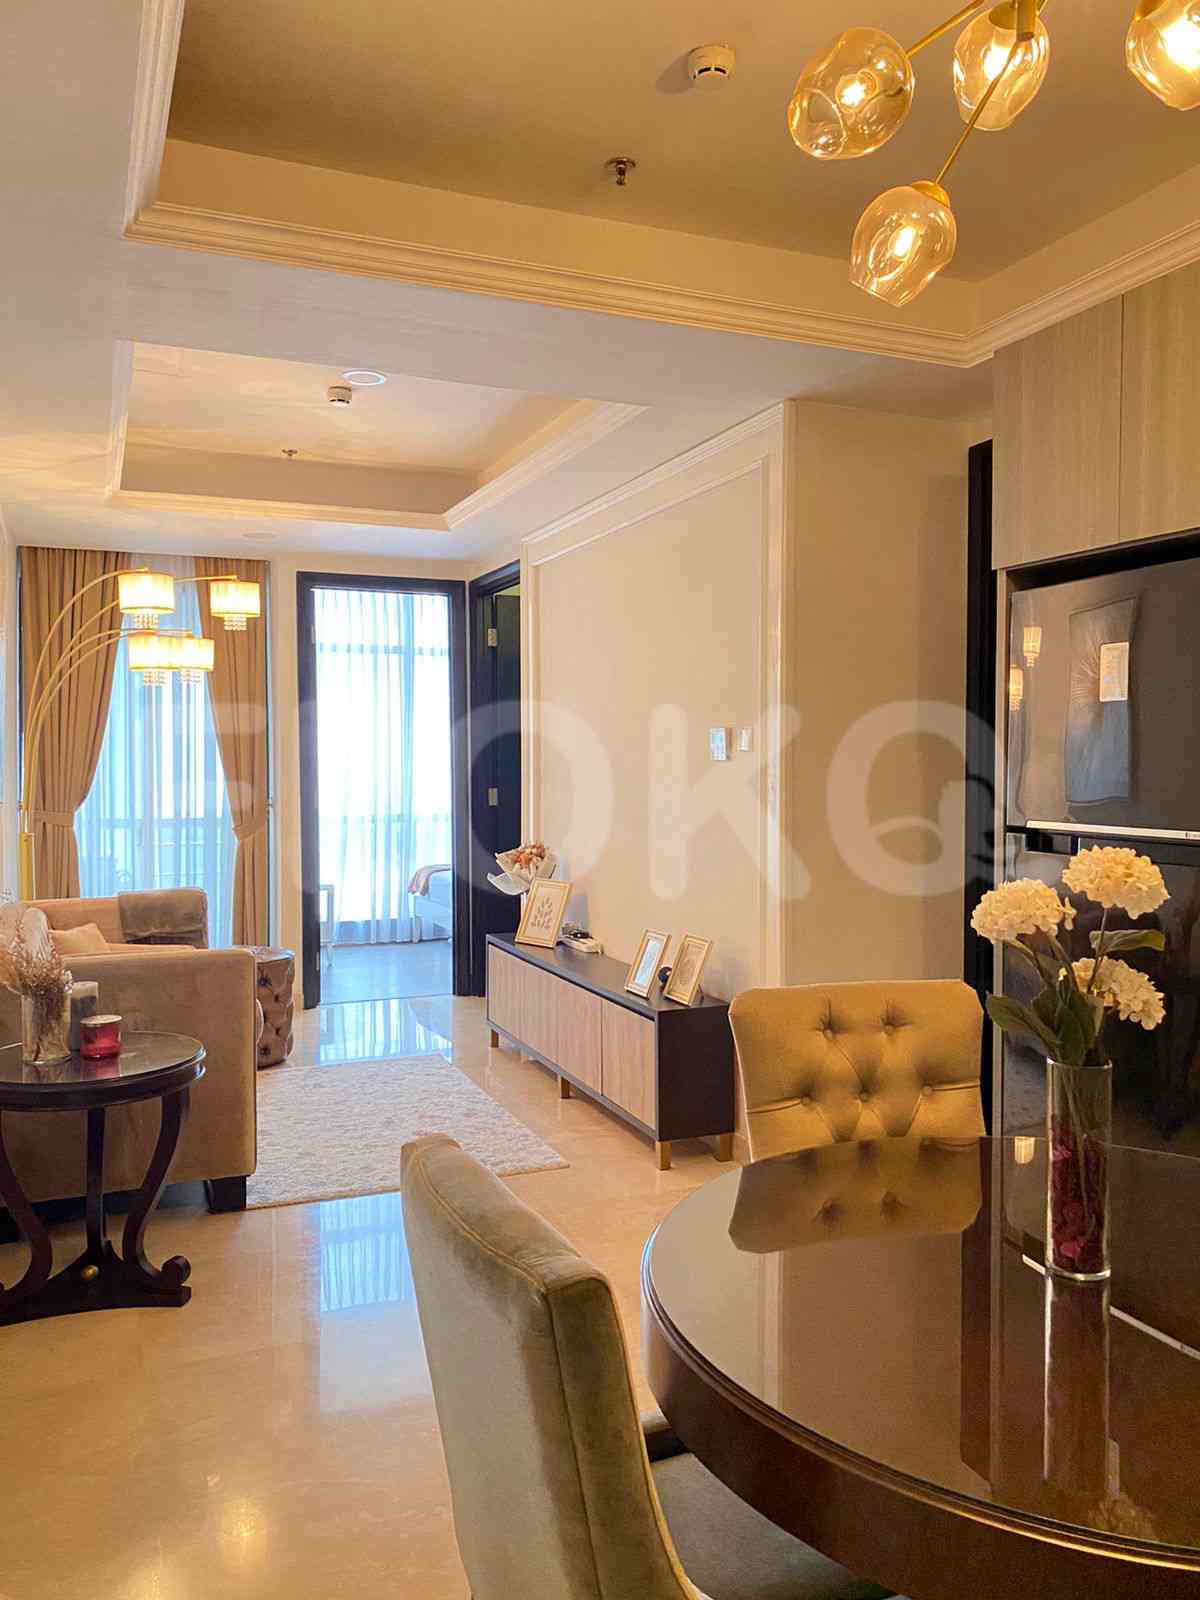 2 Bedroom on 14th Floor for Rent in Sudirman Suites Jakarta - fsu321 7